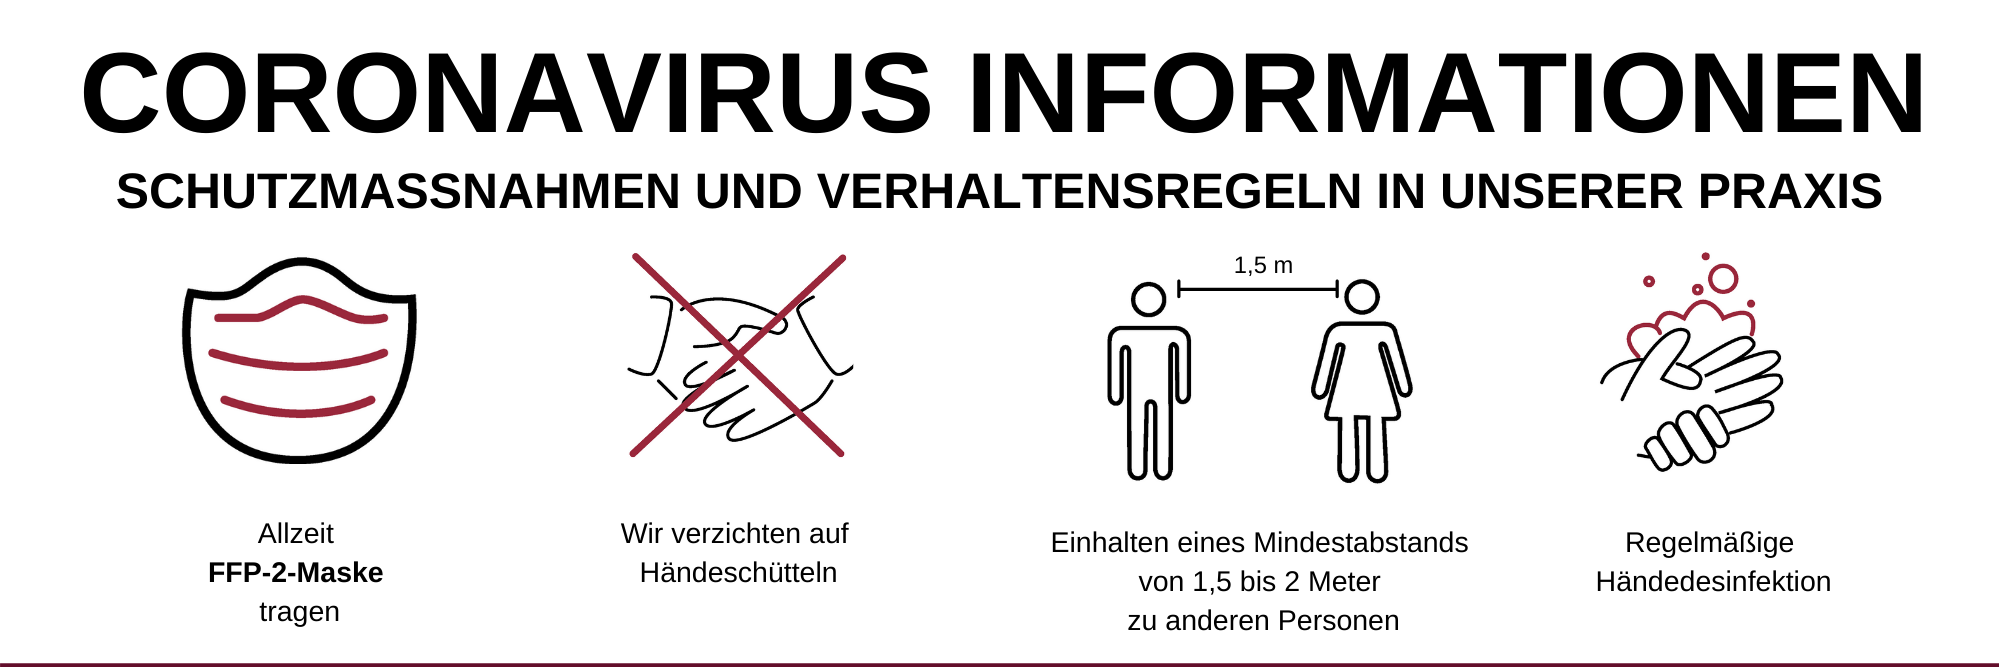 Coronavirus-Informationen des  Marianowicz Zentrums für Diagnose & Therapie in München-Bogenhausen